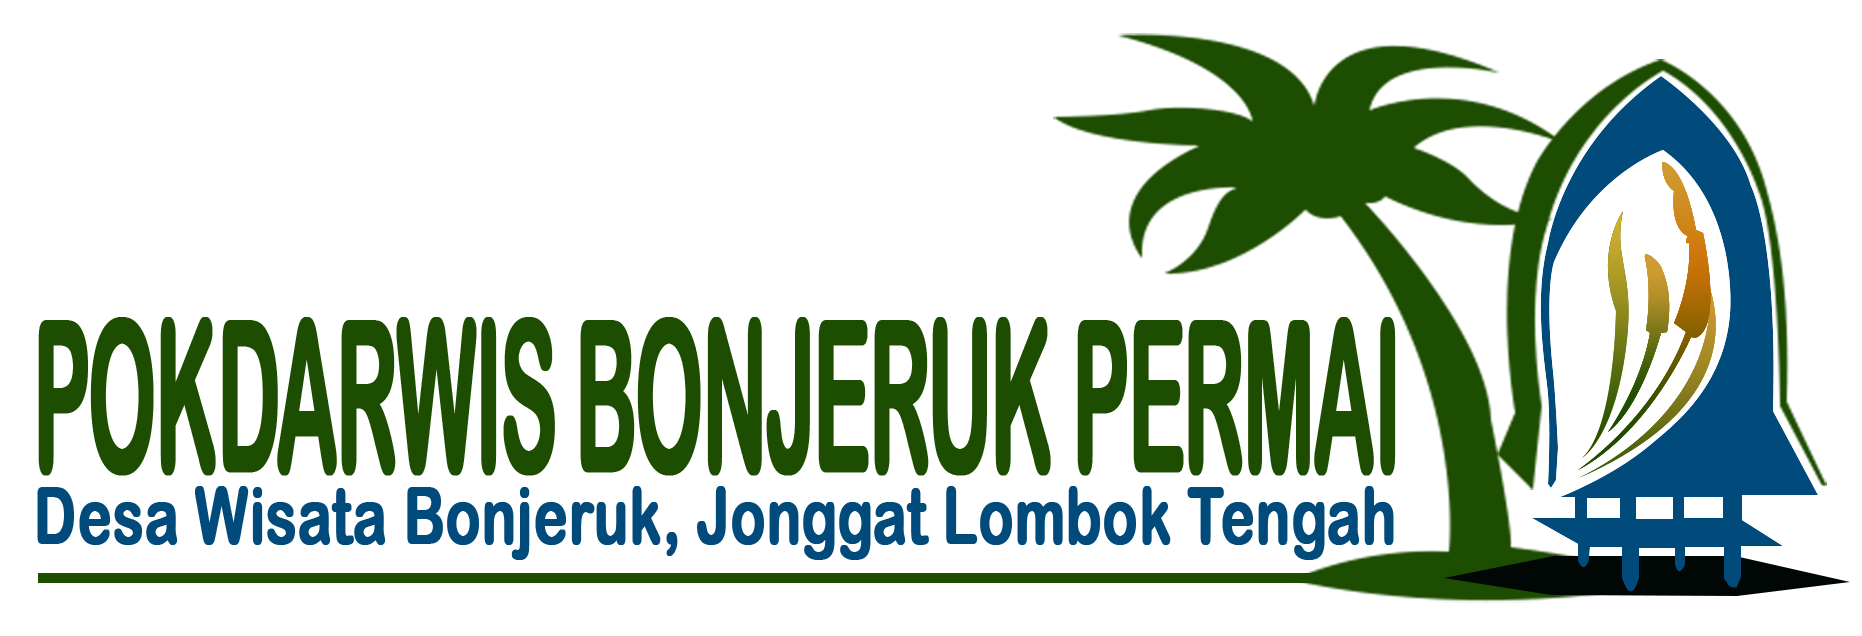 Logo Pokdarwis Bonjeruk